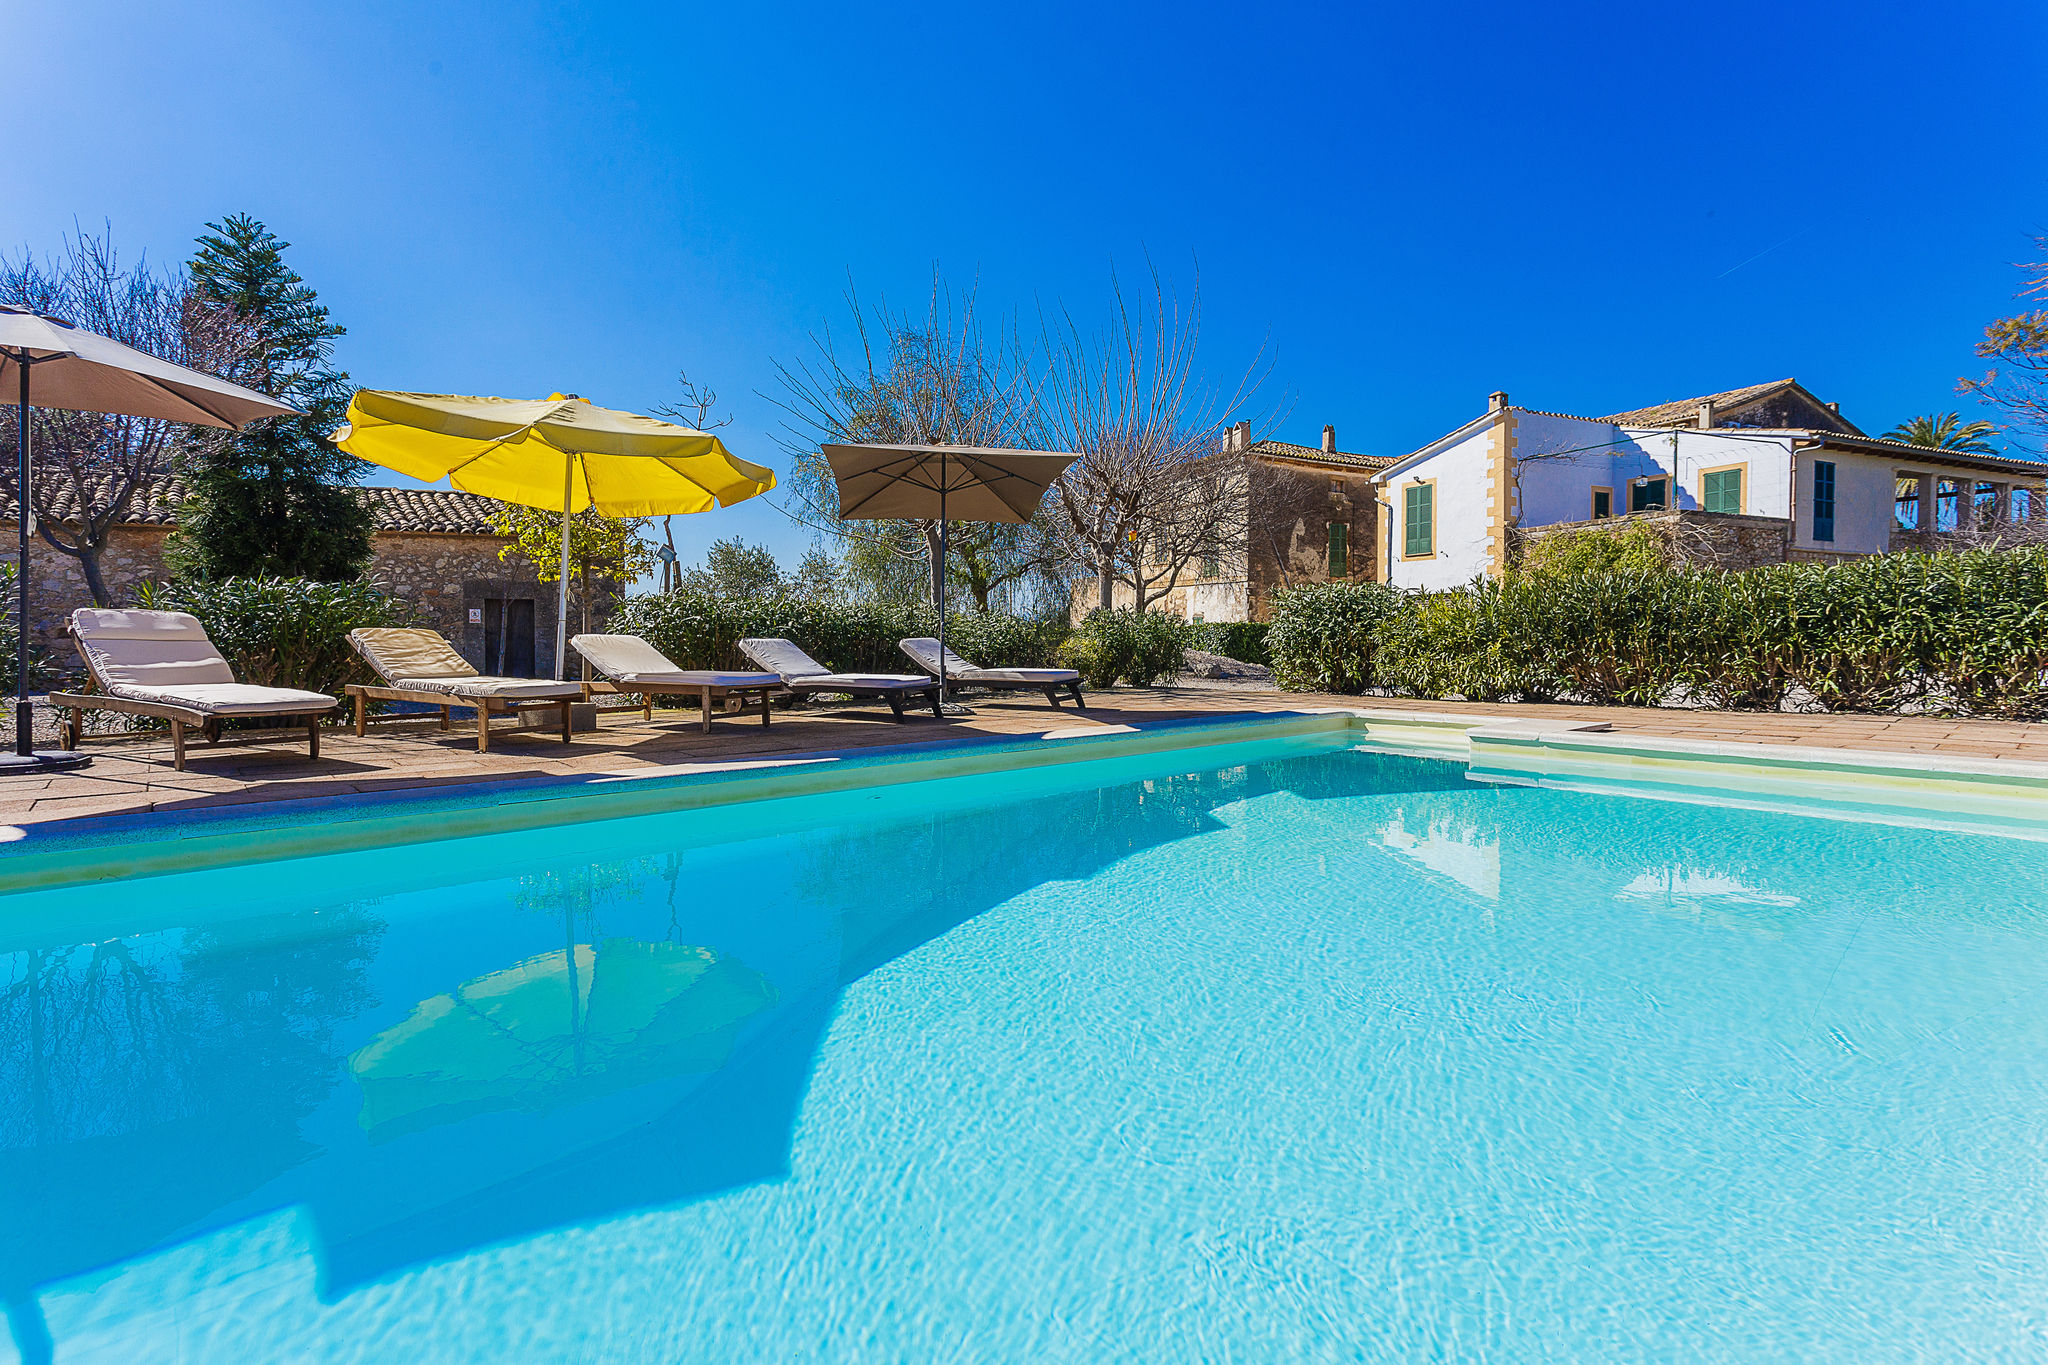 Mooie oude finca met privé zwembad op steenworp afstand van leuke dorp Alaró